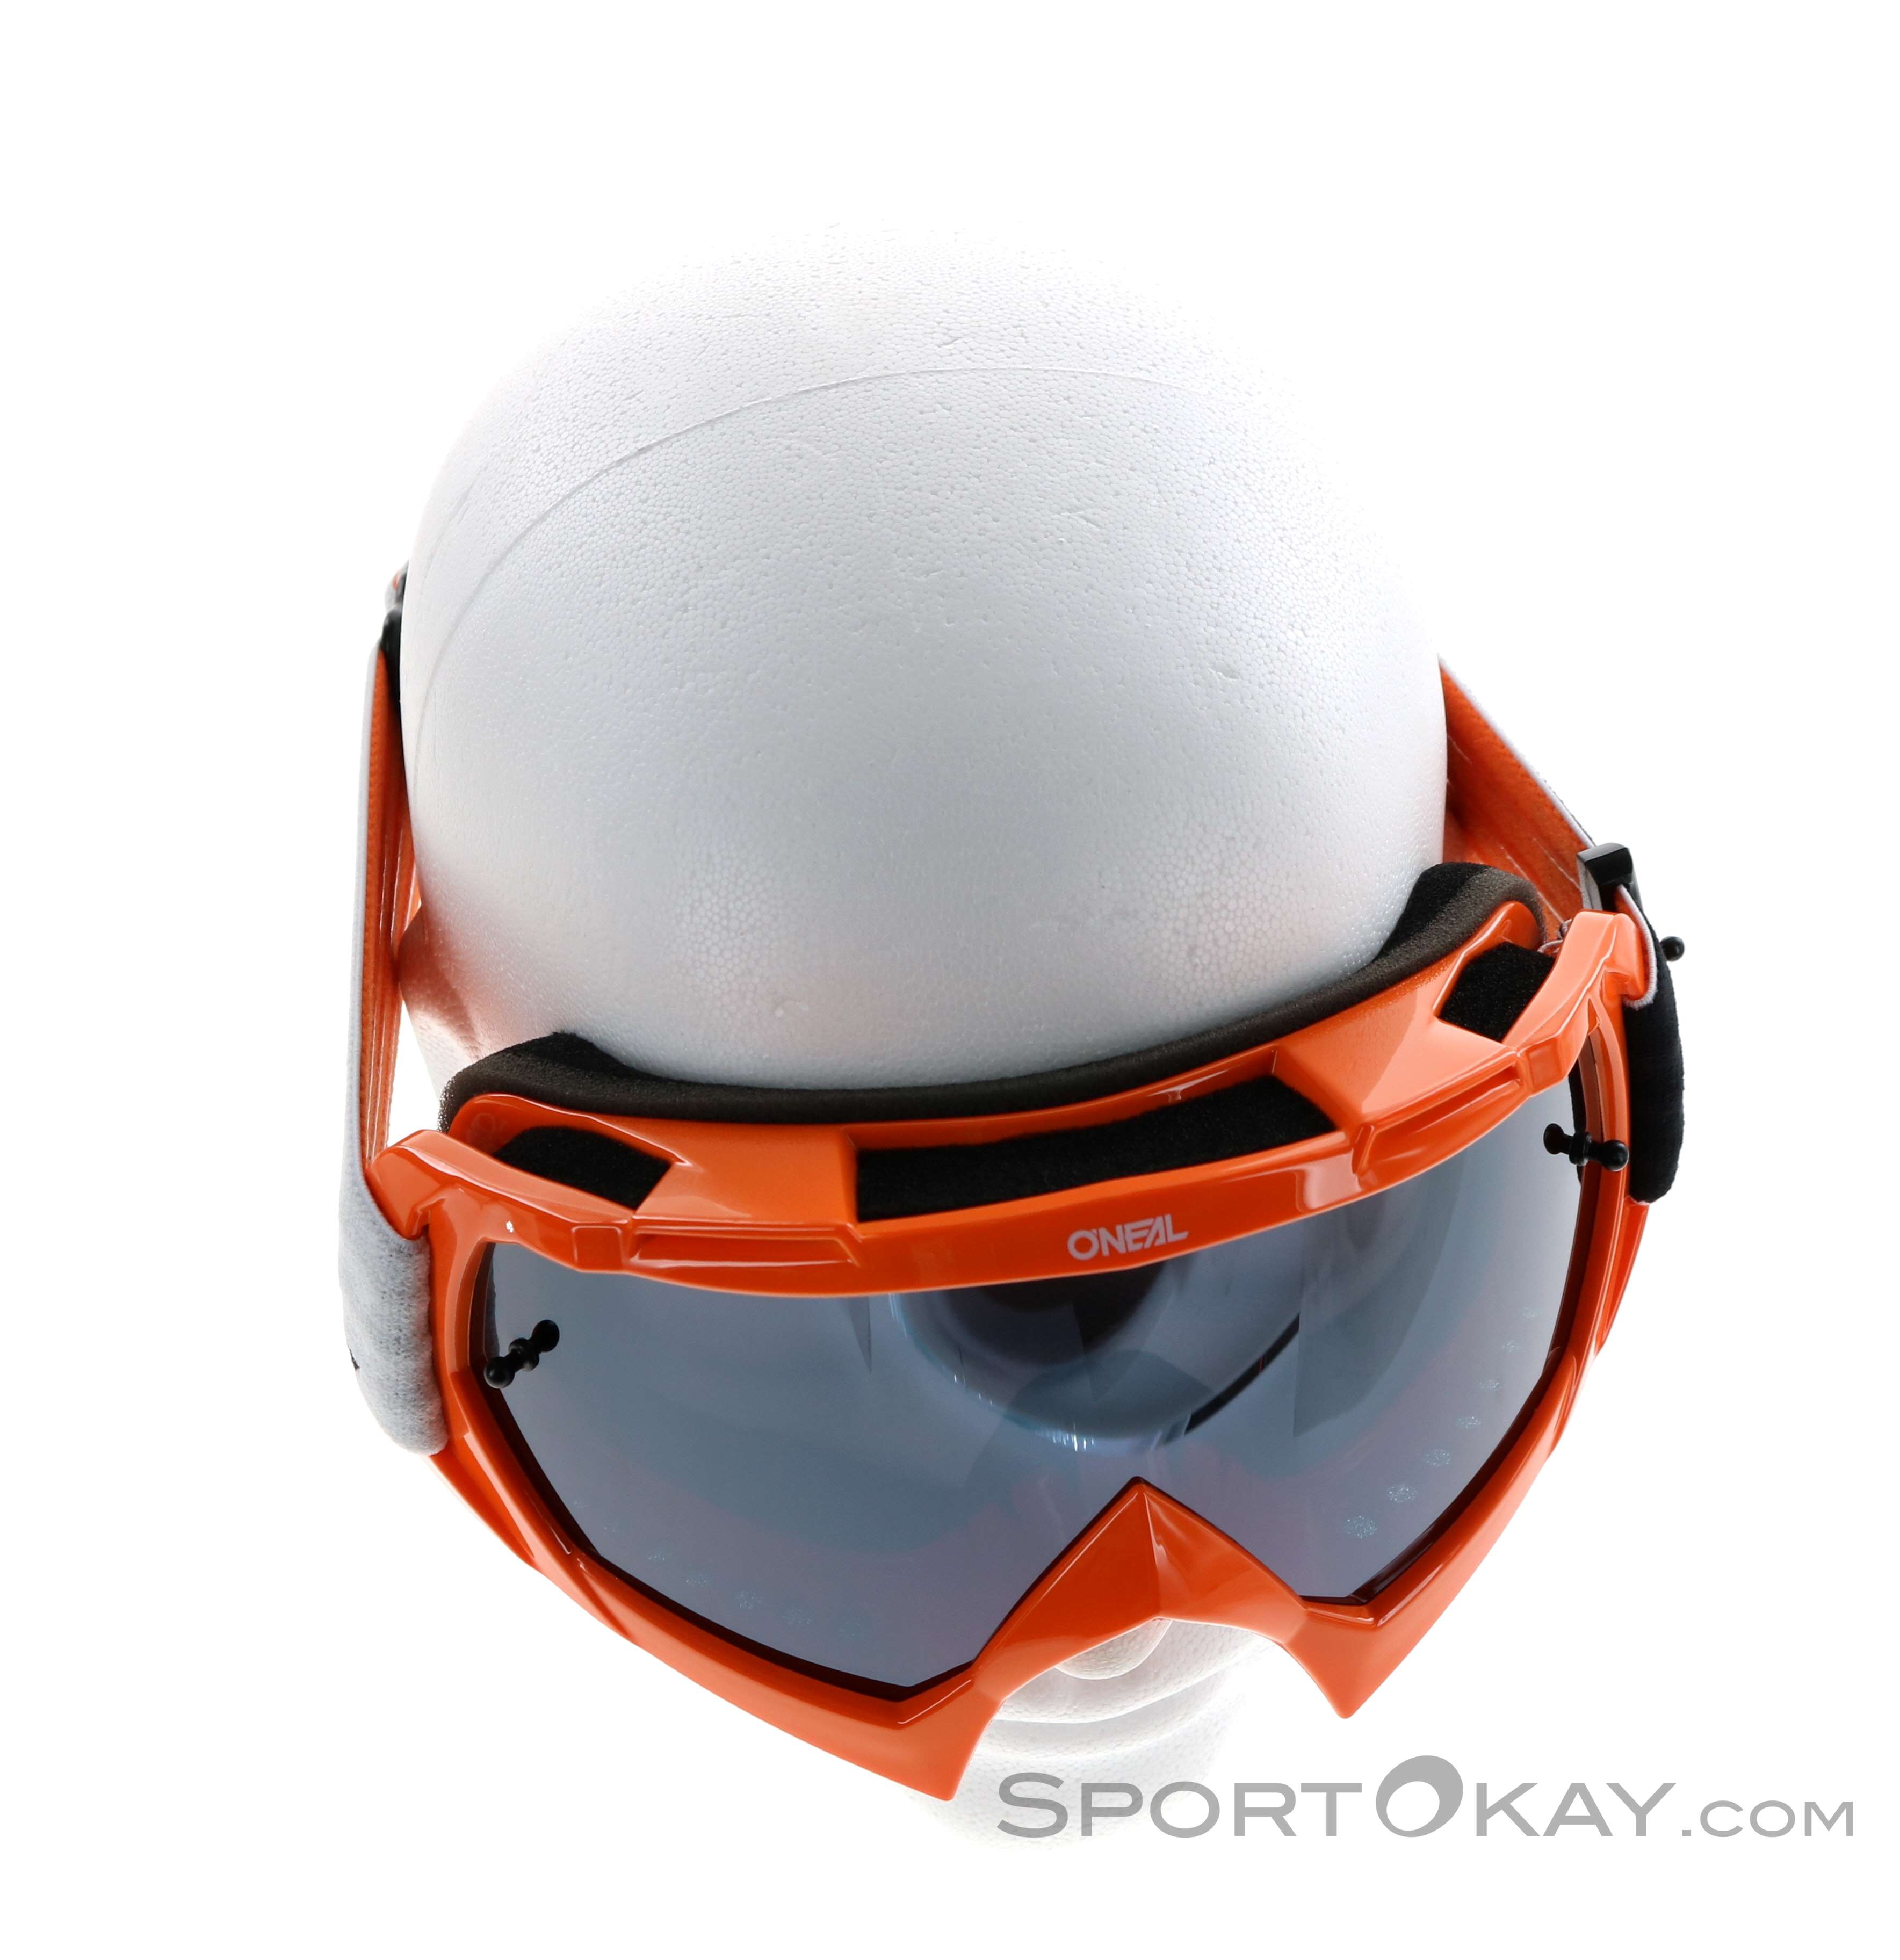 ONeal Tear Offs Abreissfolie Klar B-10 Goggle Moto Cross MX DH Downhill Brille Zubehör 6020-912 